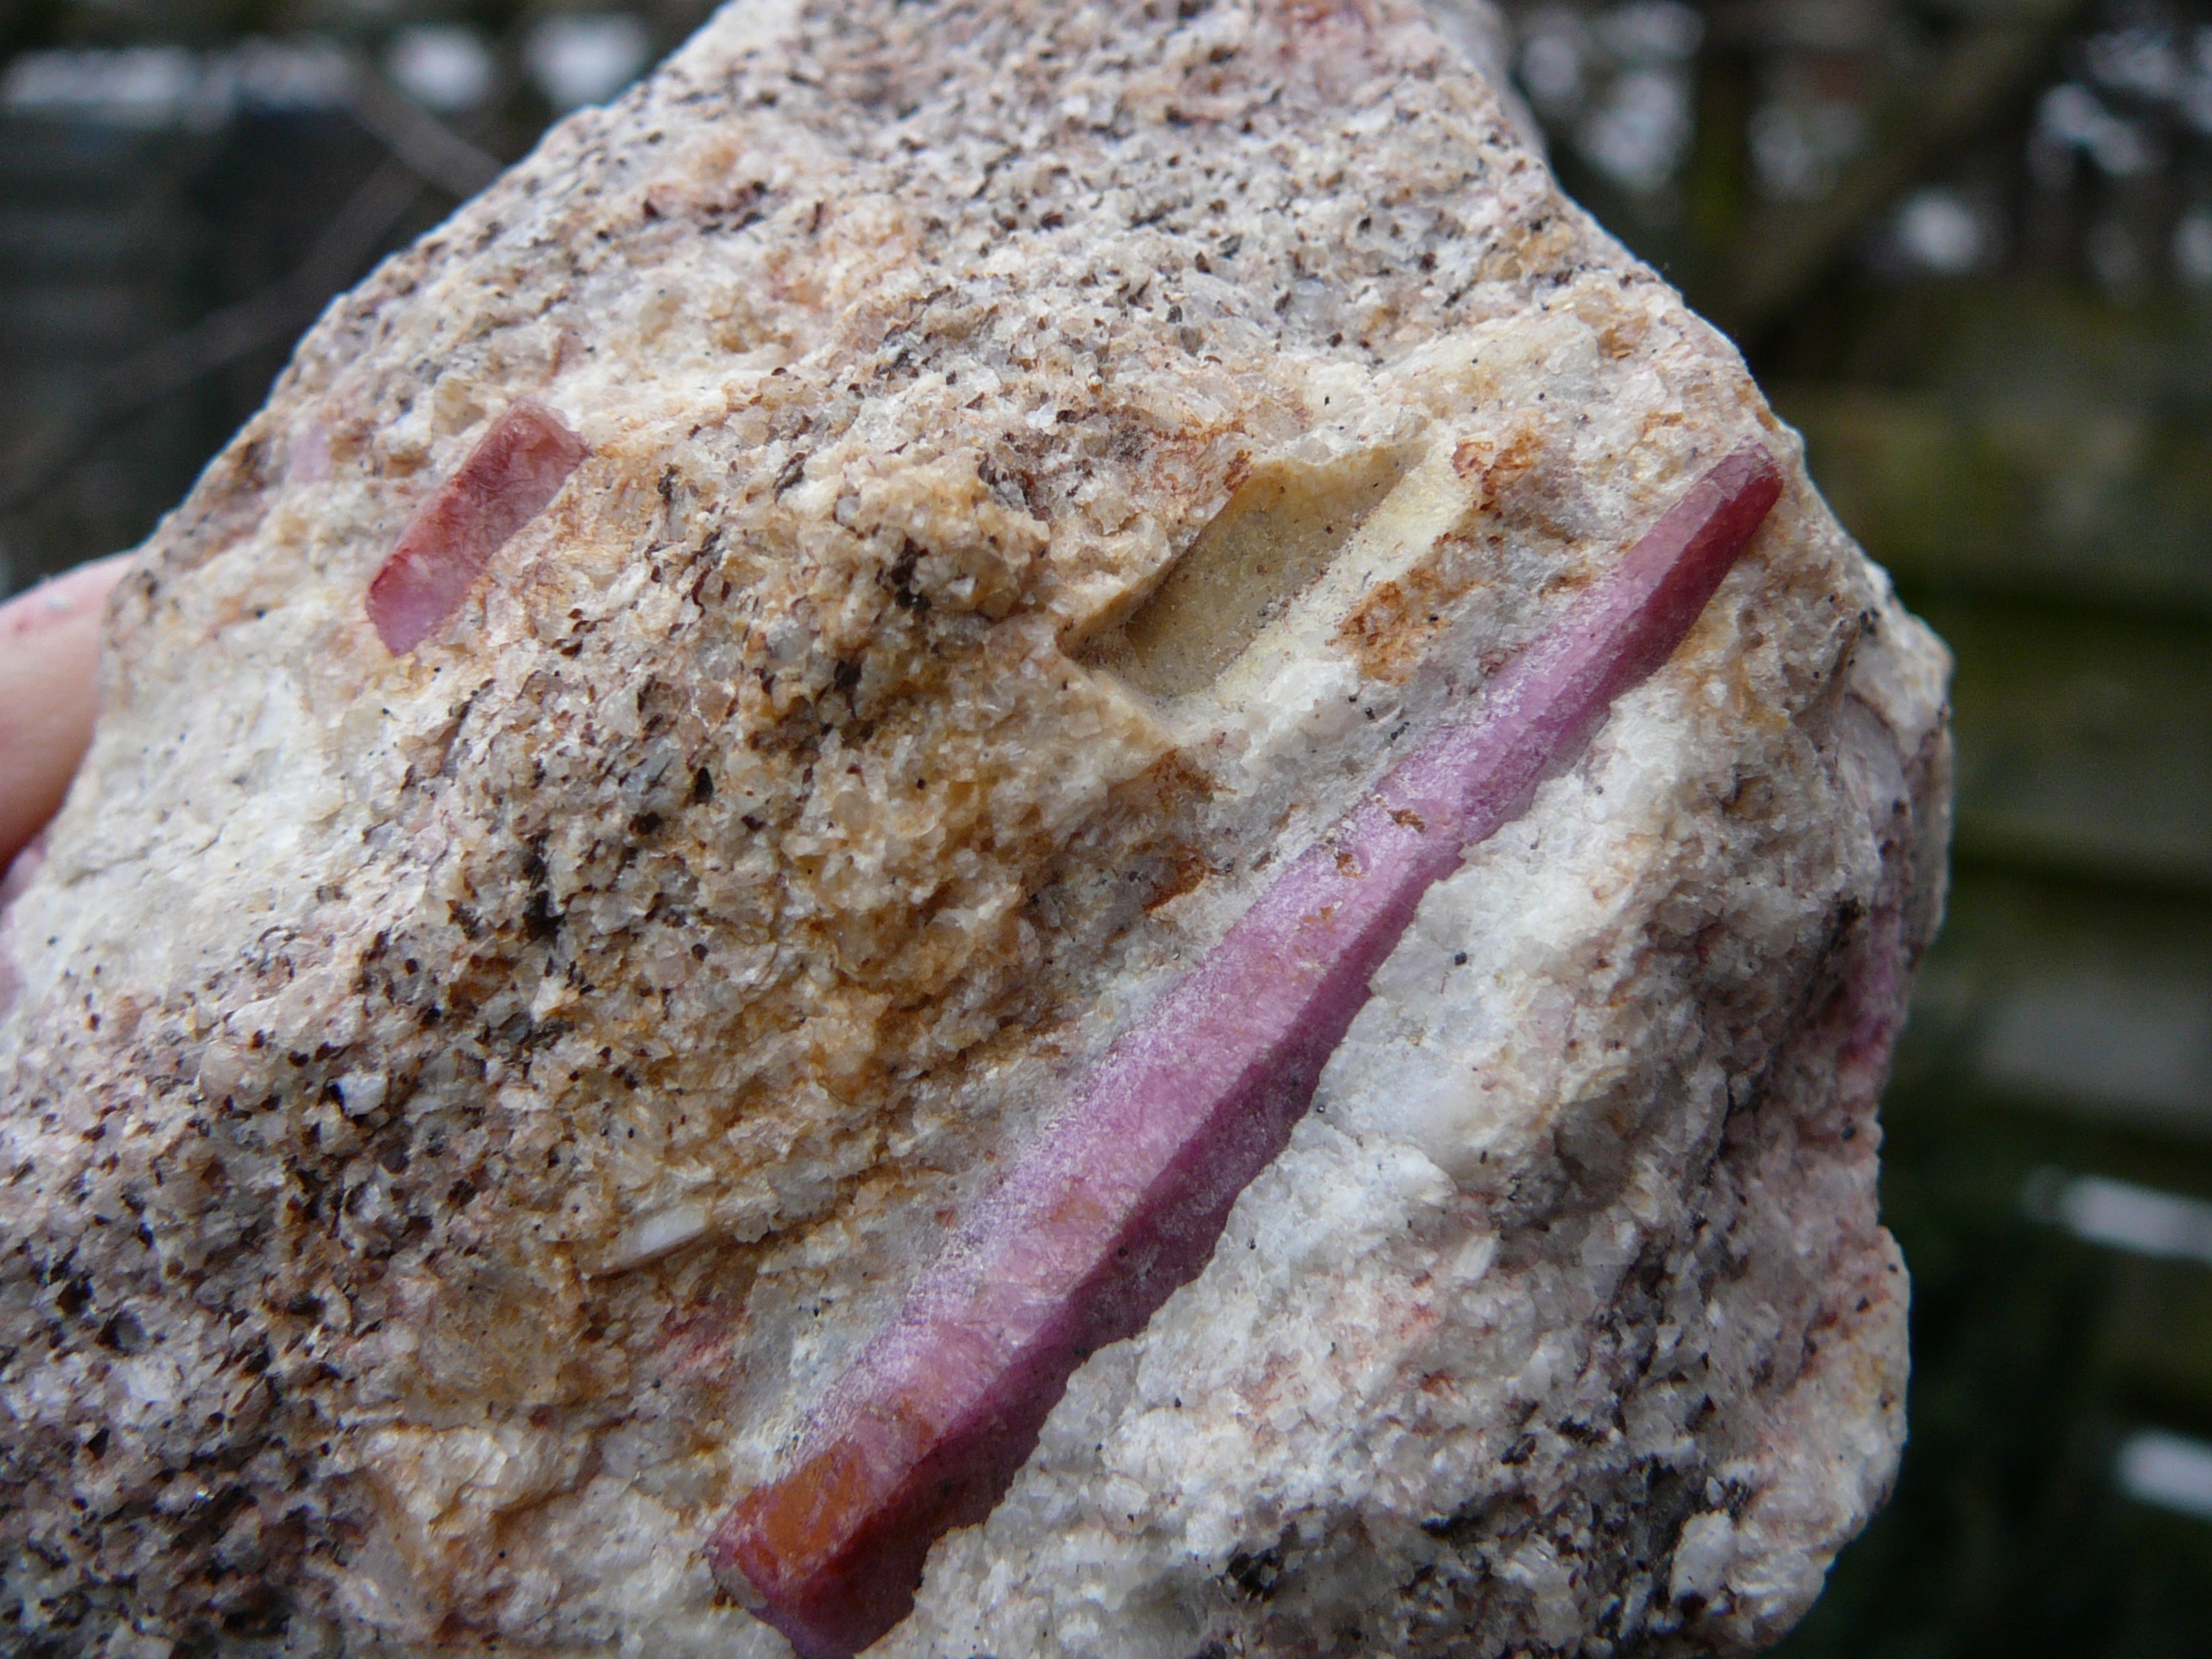 Red corundum (ruby) crystals embedded in migmatite